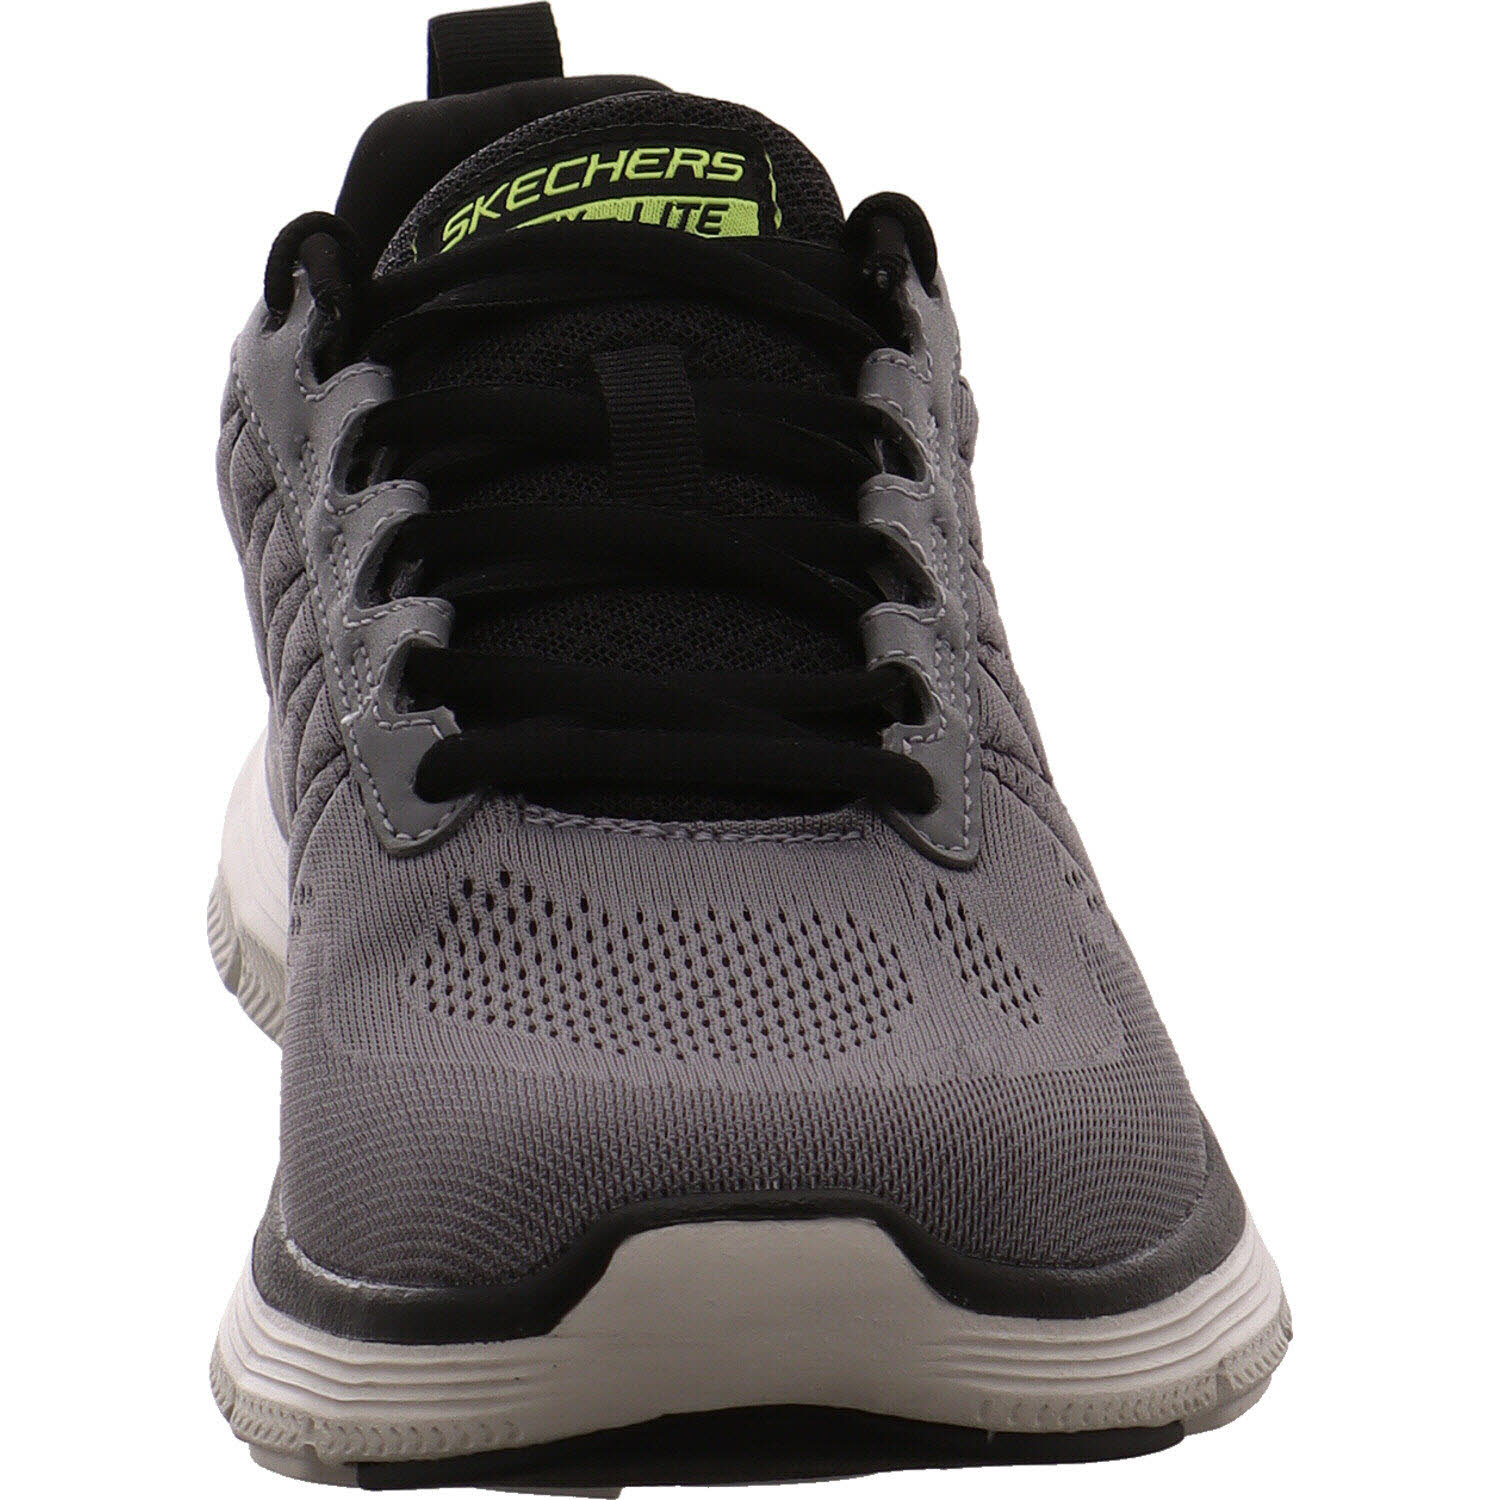 Skechers Sneaker low Flex Advatage 4.0 - Valkin